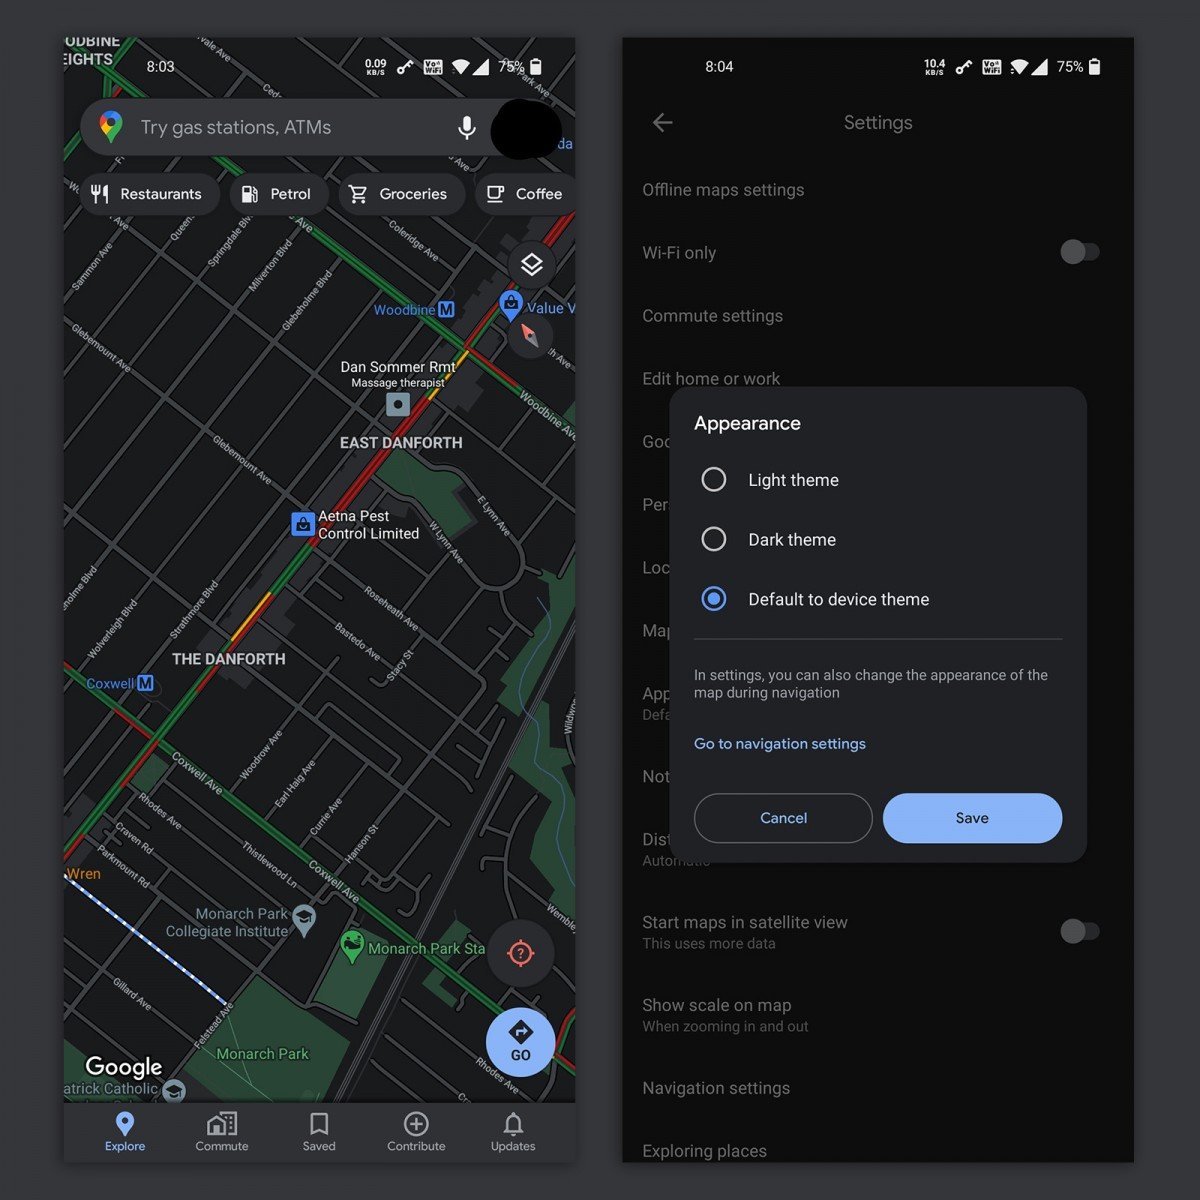 Android 11 İçin Google Haritalar’a Karanlık Mod Yayınlandı